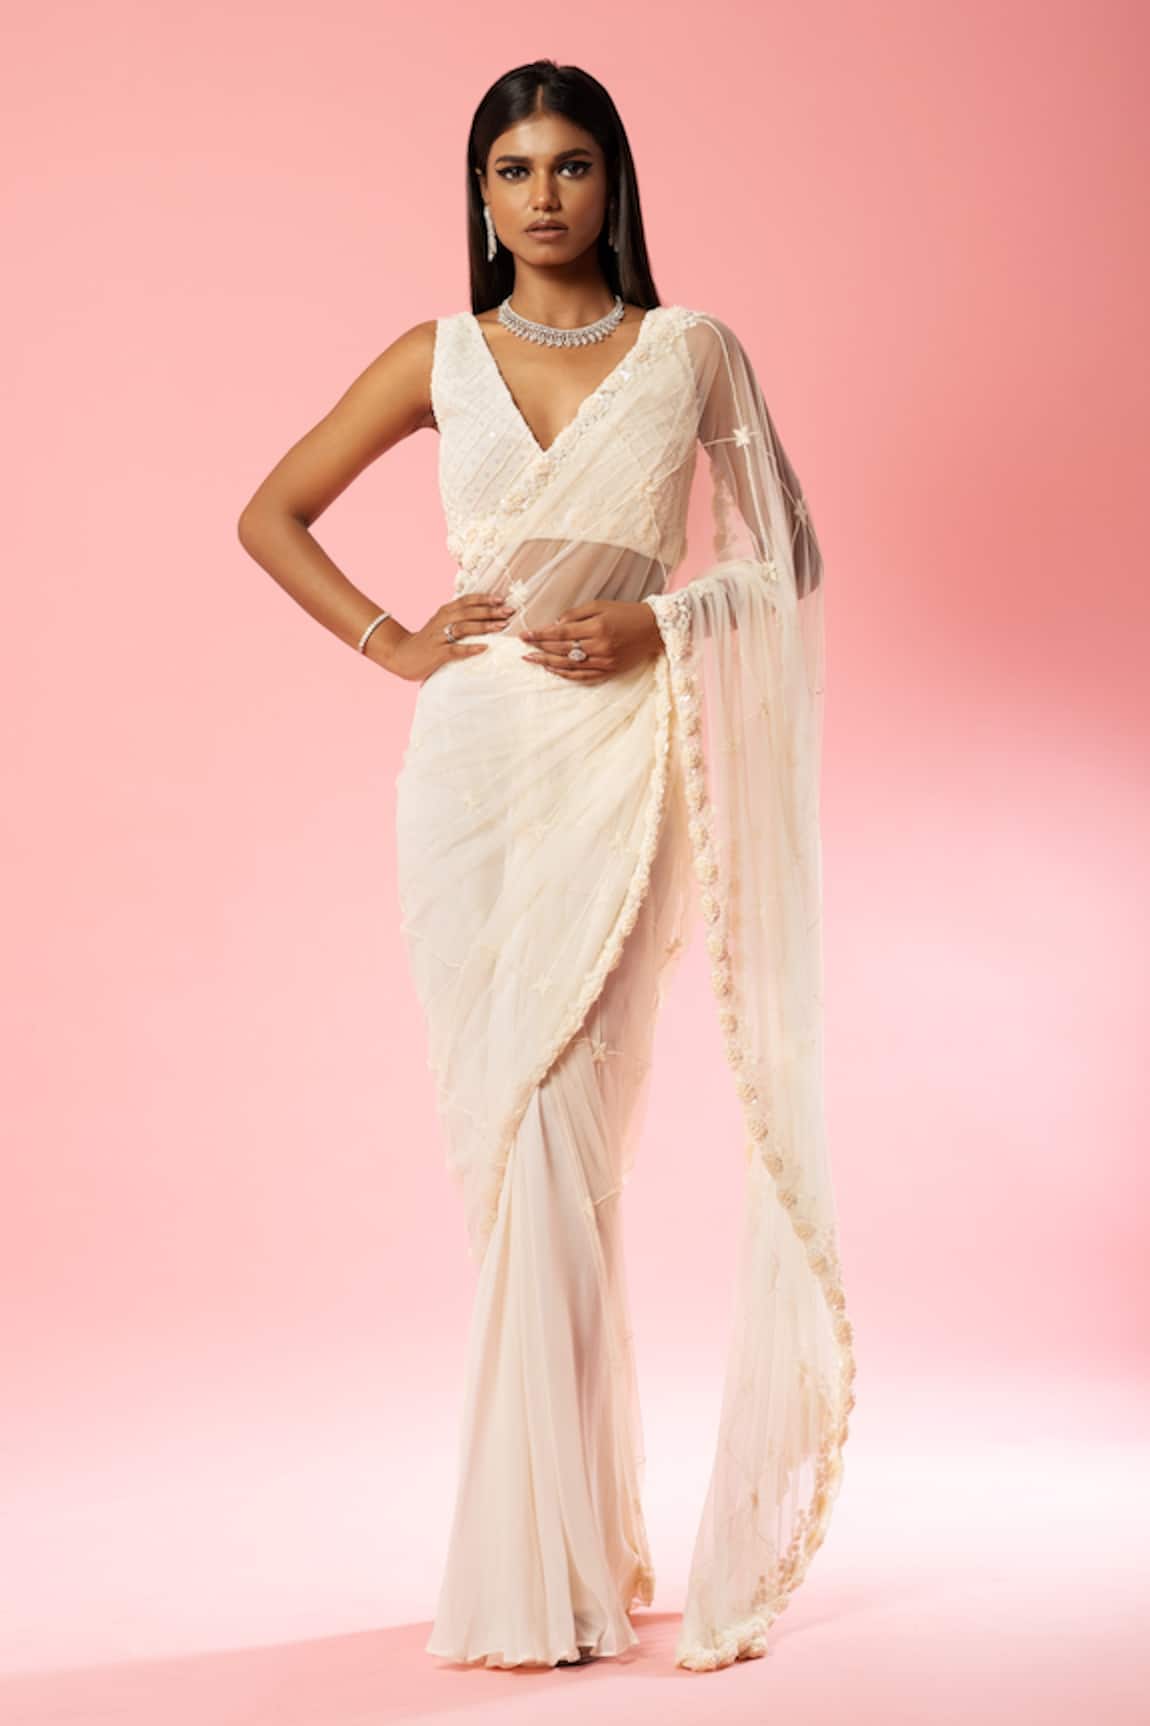 Her saree | Bridal sarees south indian, Wedding saree indian, Indian bridal  sarees